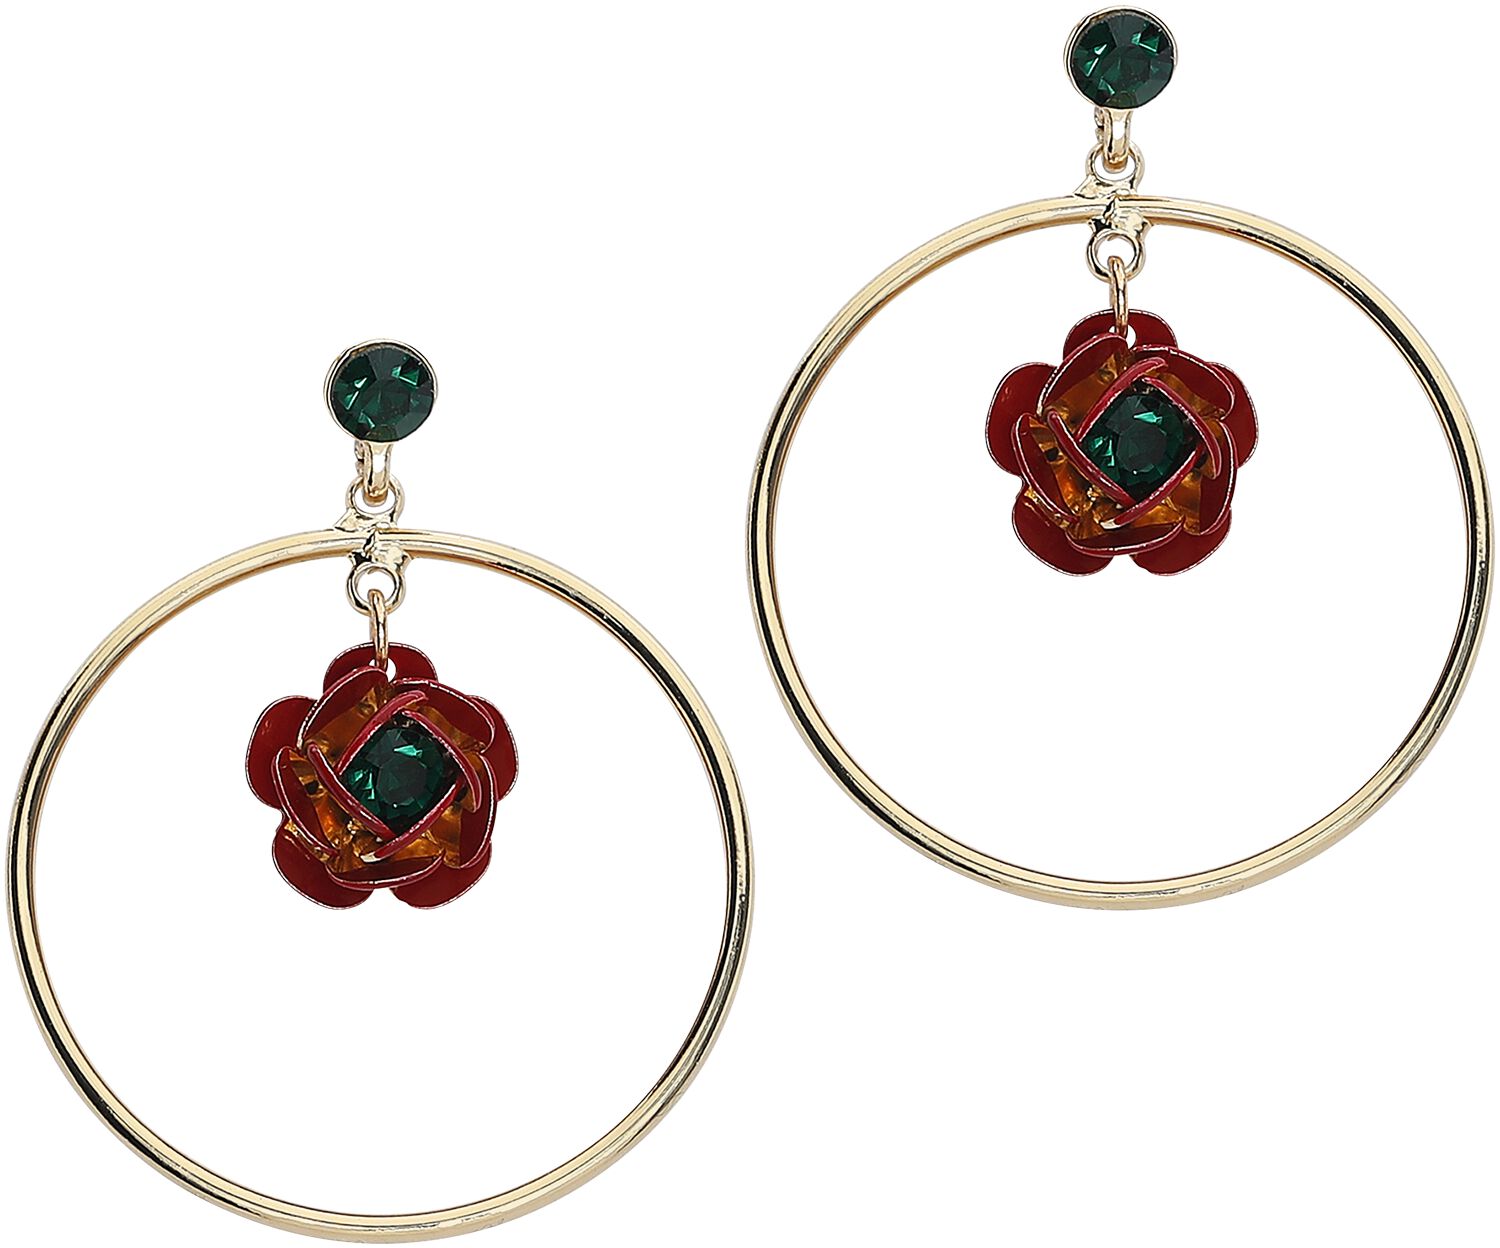 Lovett & Co. Rock and Rose Hoop Earrings Earring gold coloured